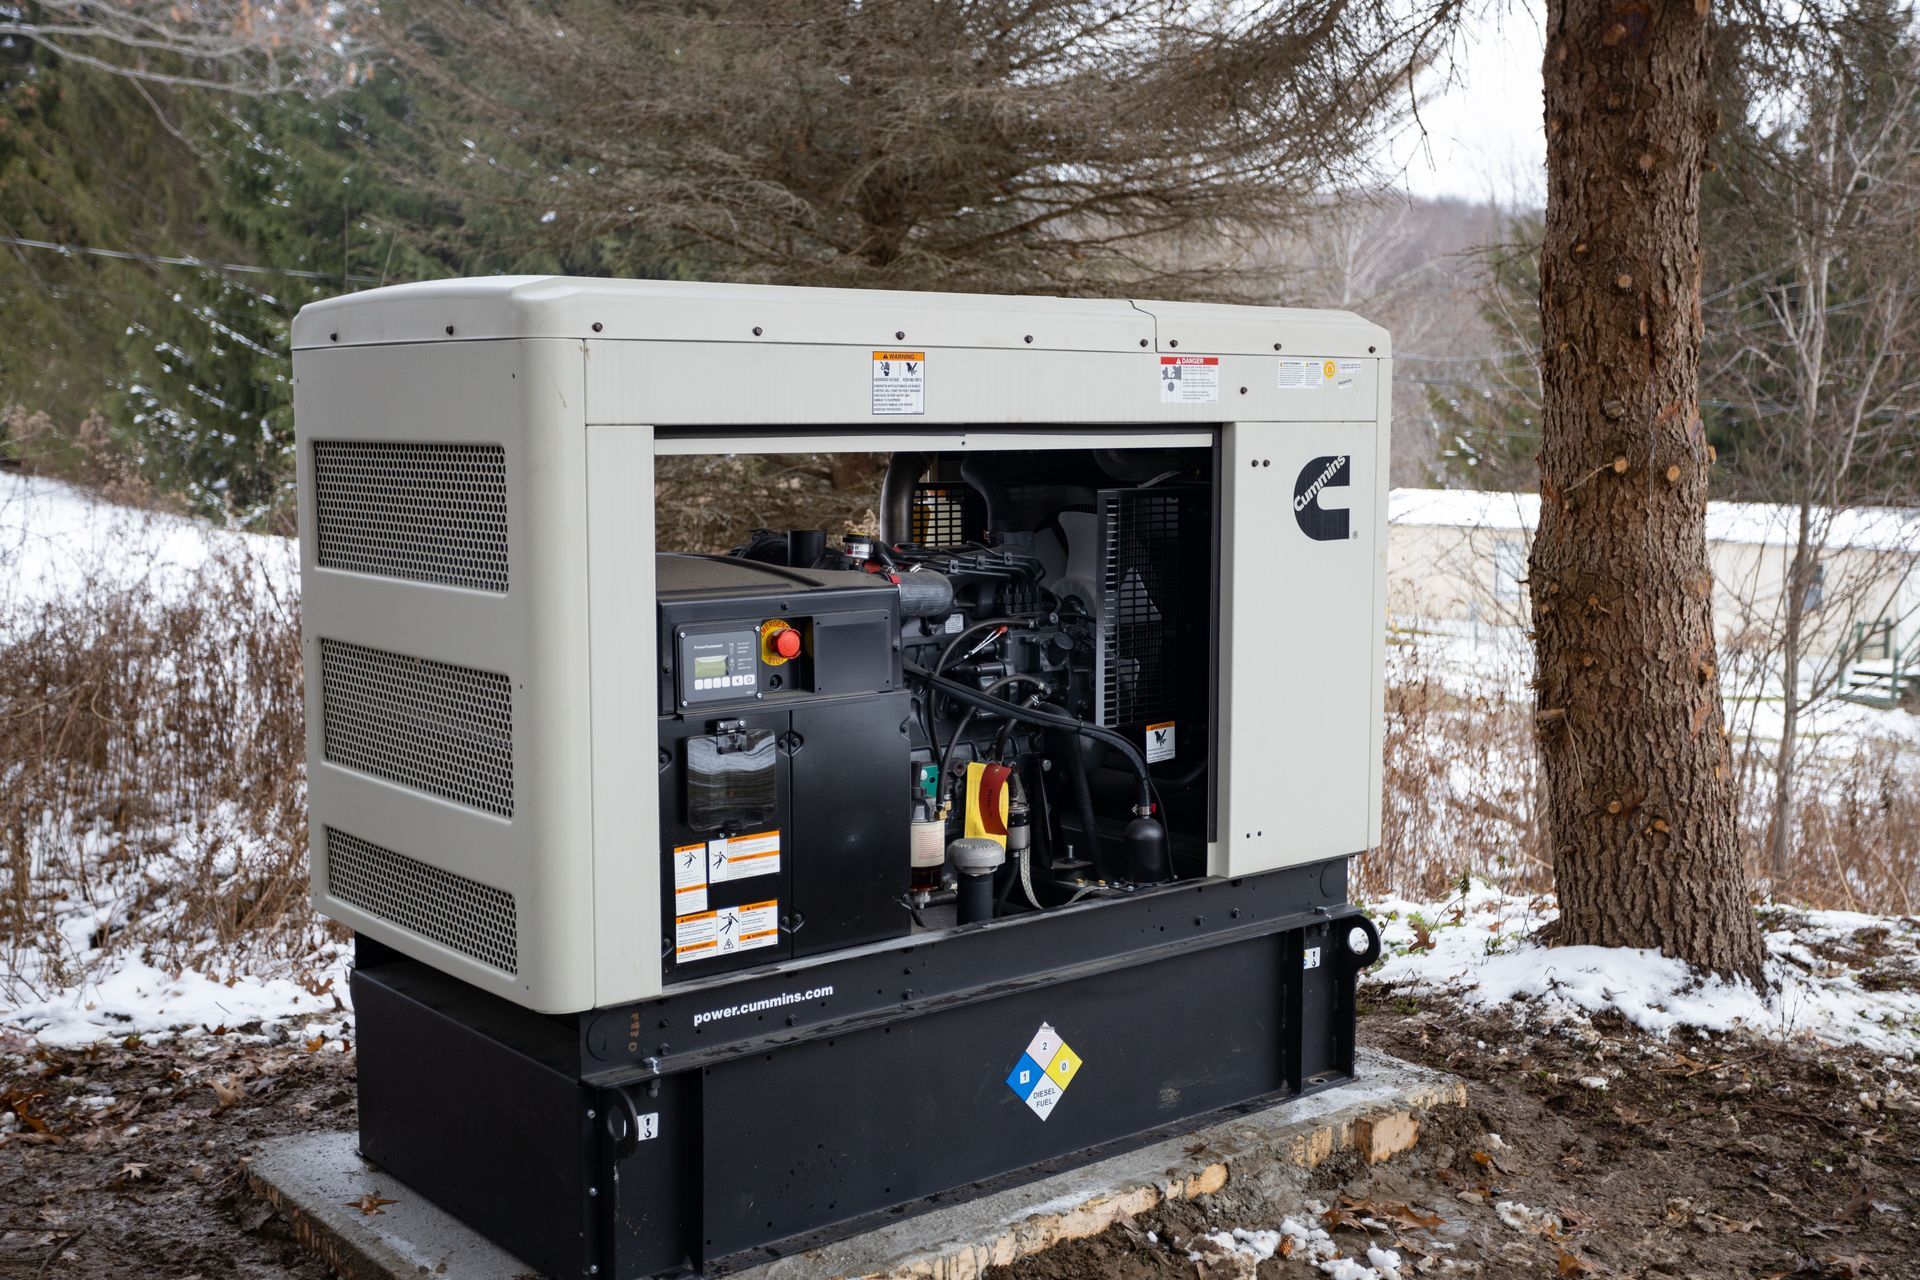 Larger generators require liquid coolant to manage higher temperatures.